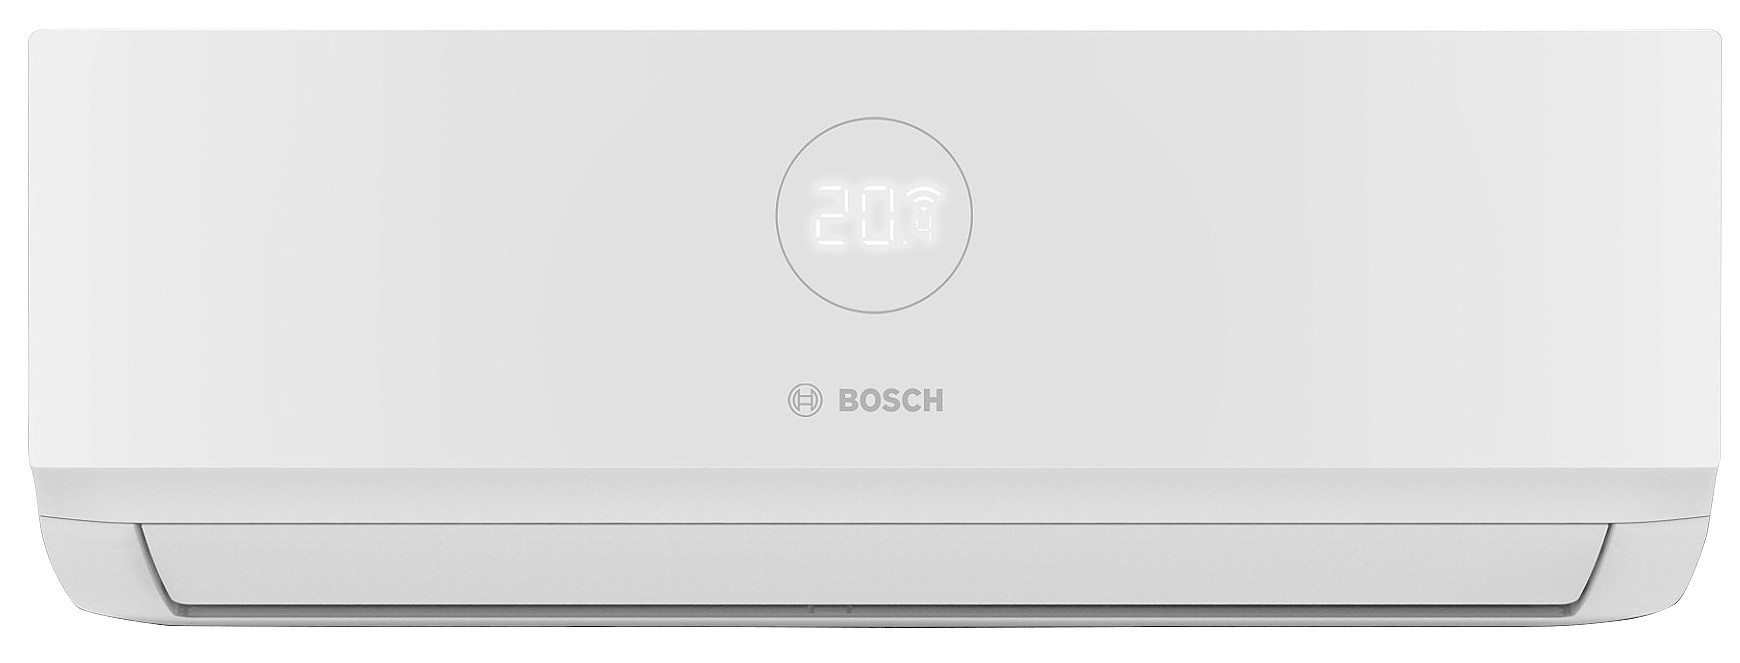 Bosch CL3000iU W 26E 2,6 кВт